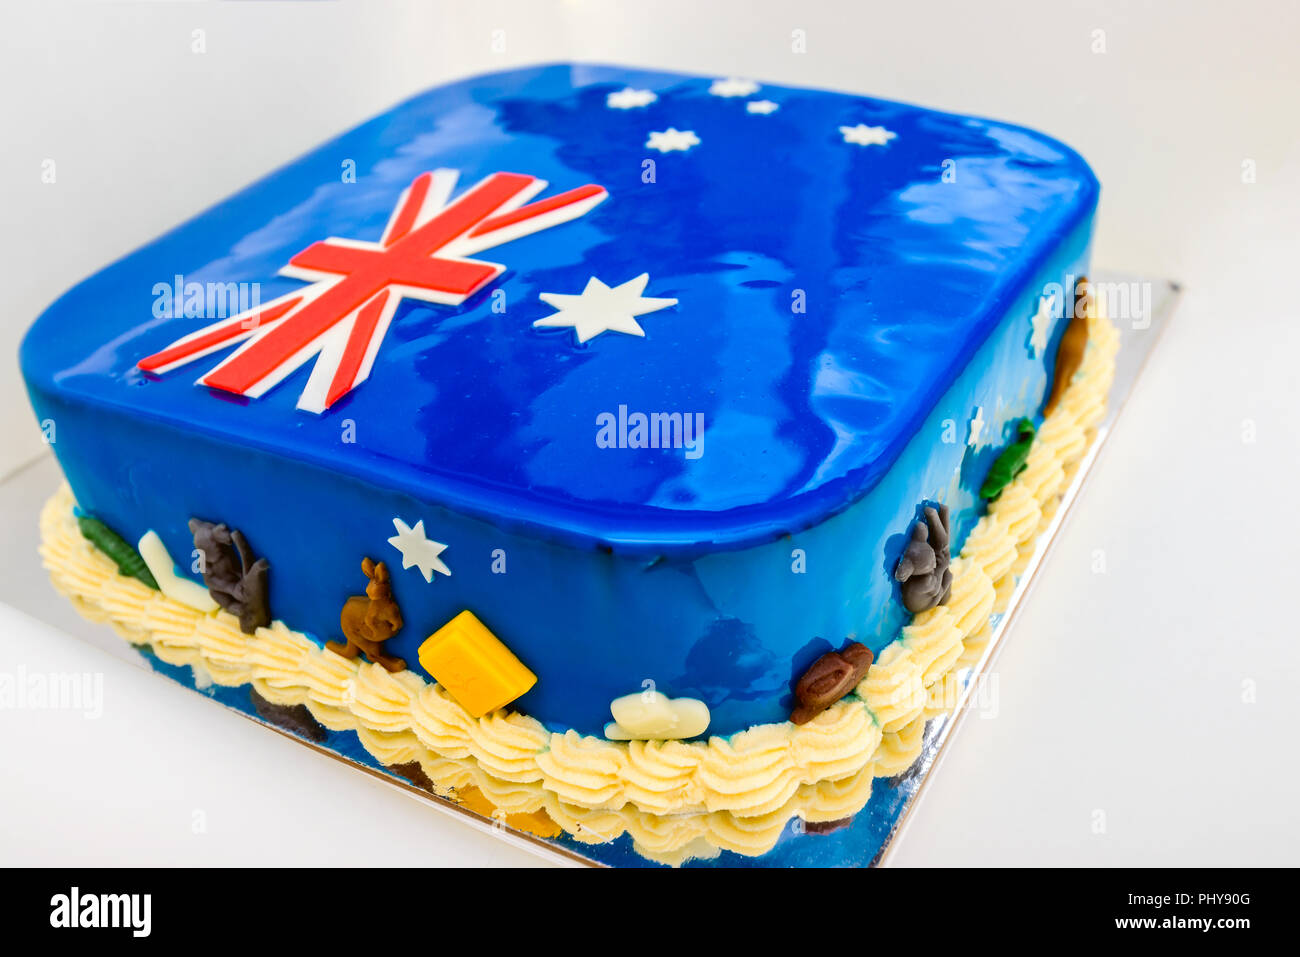 L'Australia Day tema home dolce da forno con i colori della bandiera australiana e decorate con i koala e i canguri Foto Stock